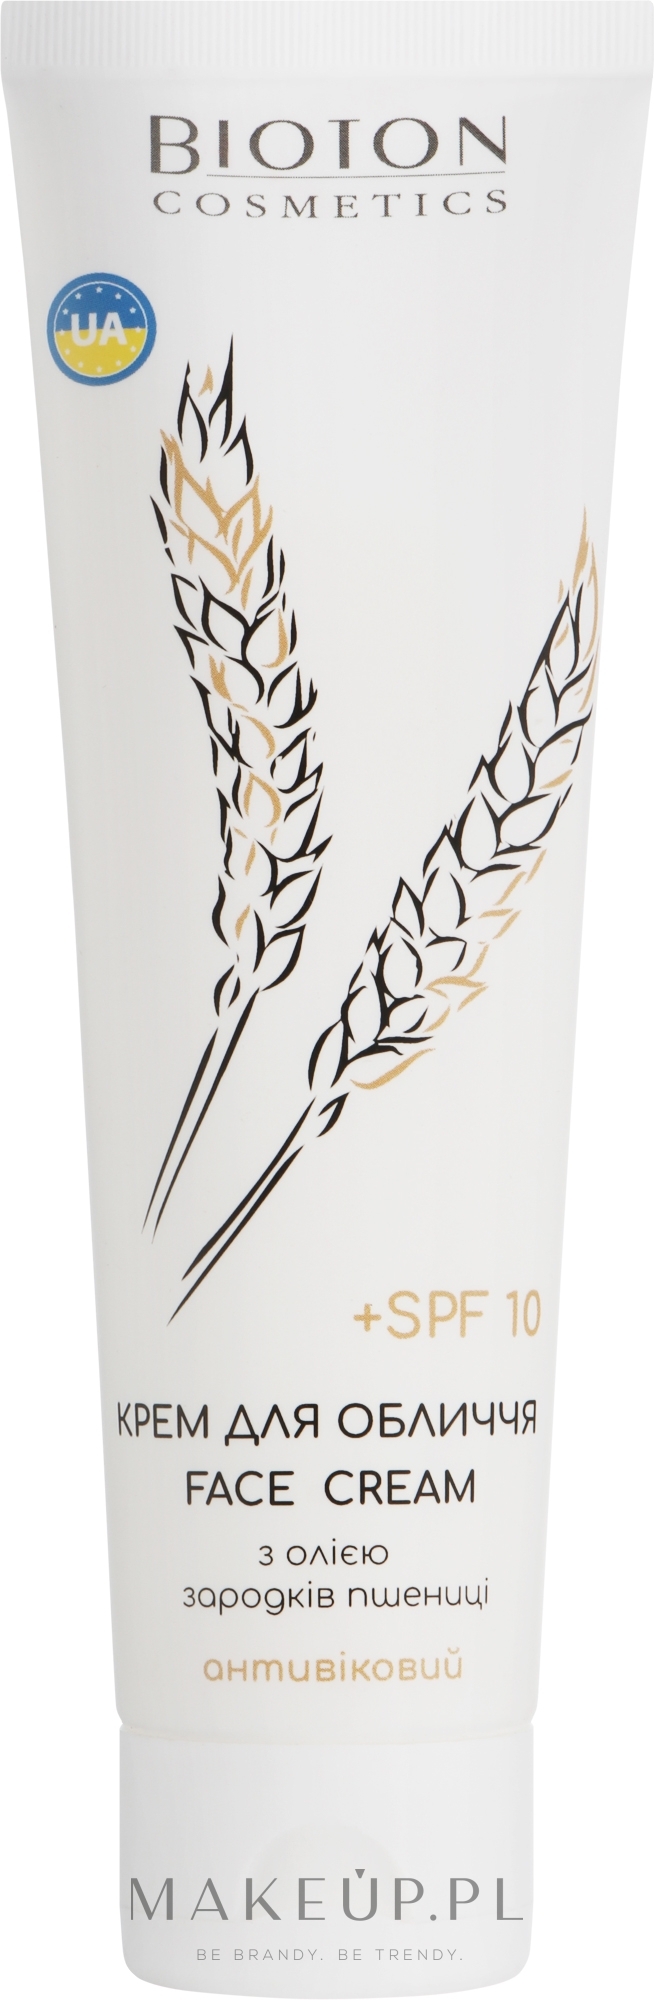 Krem do twarzy z ekstraktem z białka kiełków pszenicy - Bioton Cosmetics Face Cream SPF 10 — Zdjęcie 100 ml